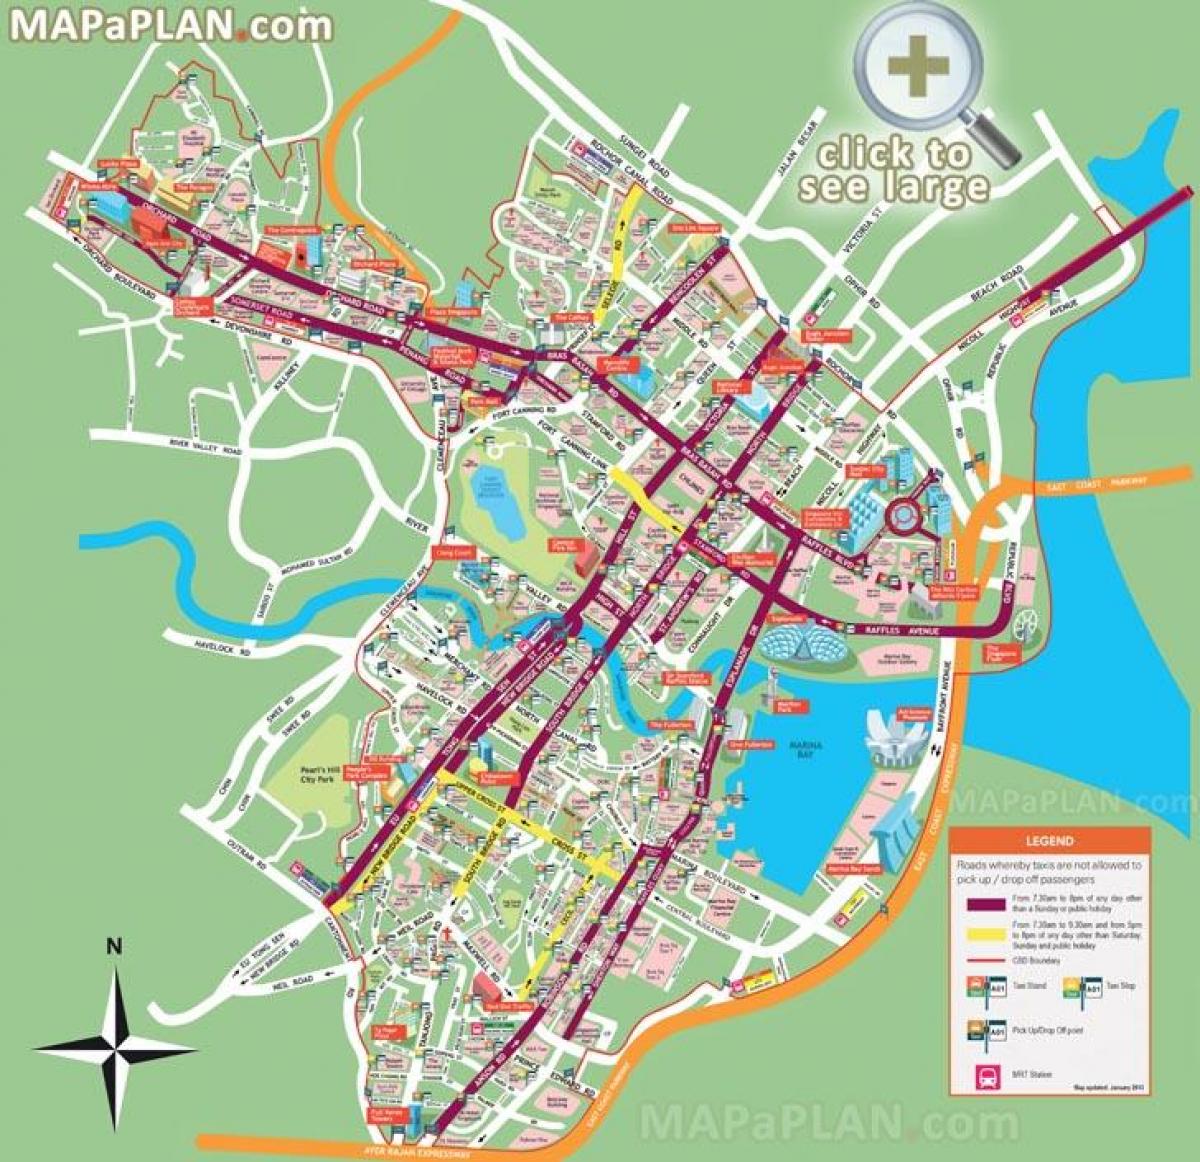 mappa stradale di Singapore